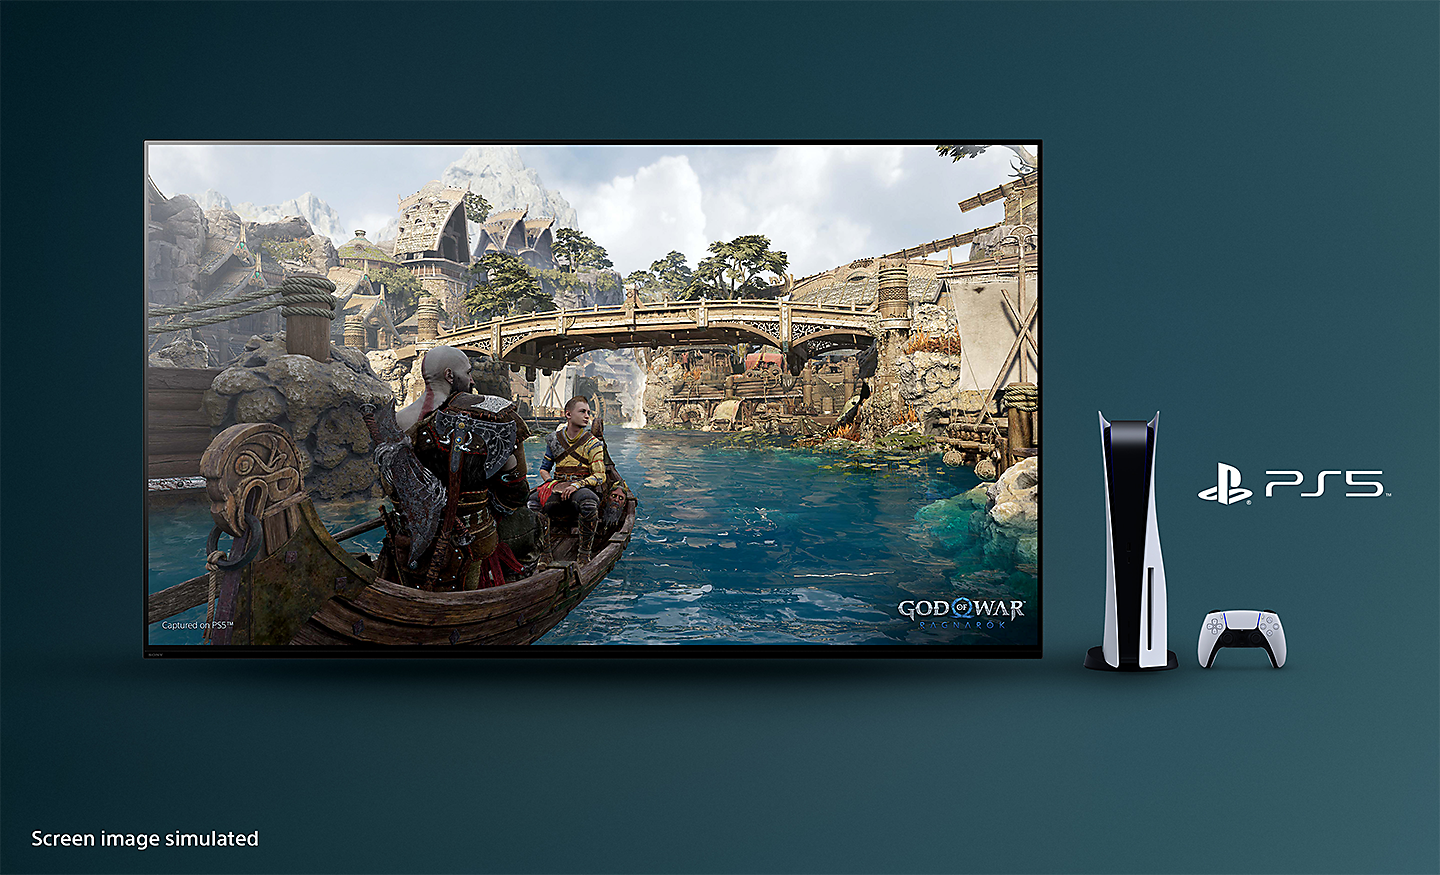 BRAVIA 電視截圖展示《戰神：諸神黃昏》的畫面，背景為一艘在河上漂流的小船和橋樑，電視右邊擺放著 PS5™ 主機和控制器，同時顯示 PS5™ 的標誌